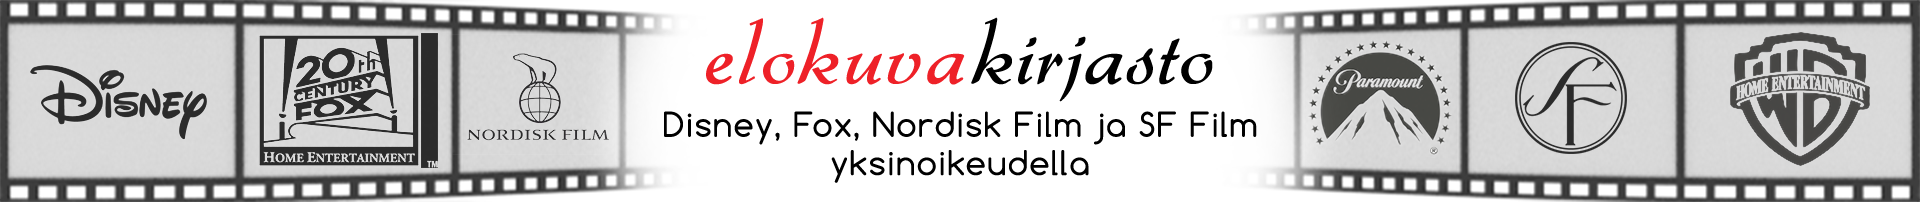 Elokuvakirjasto.fi